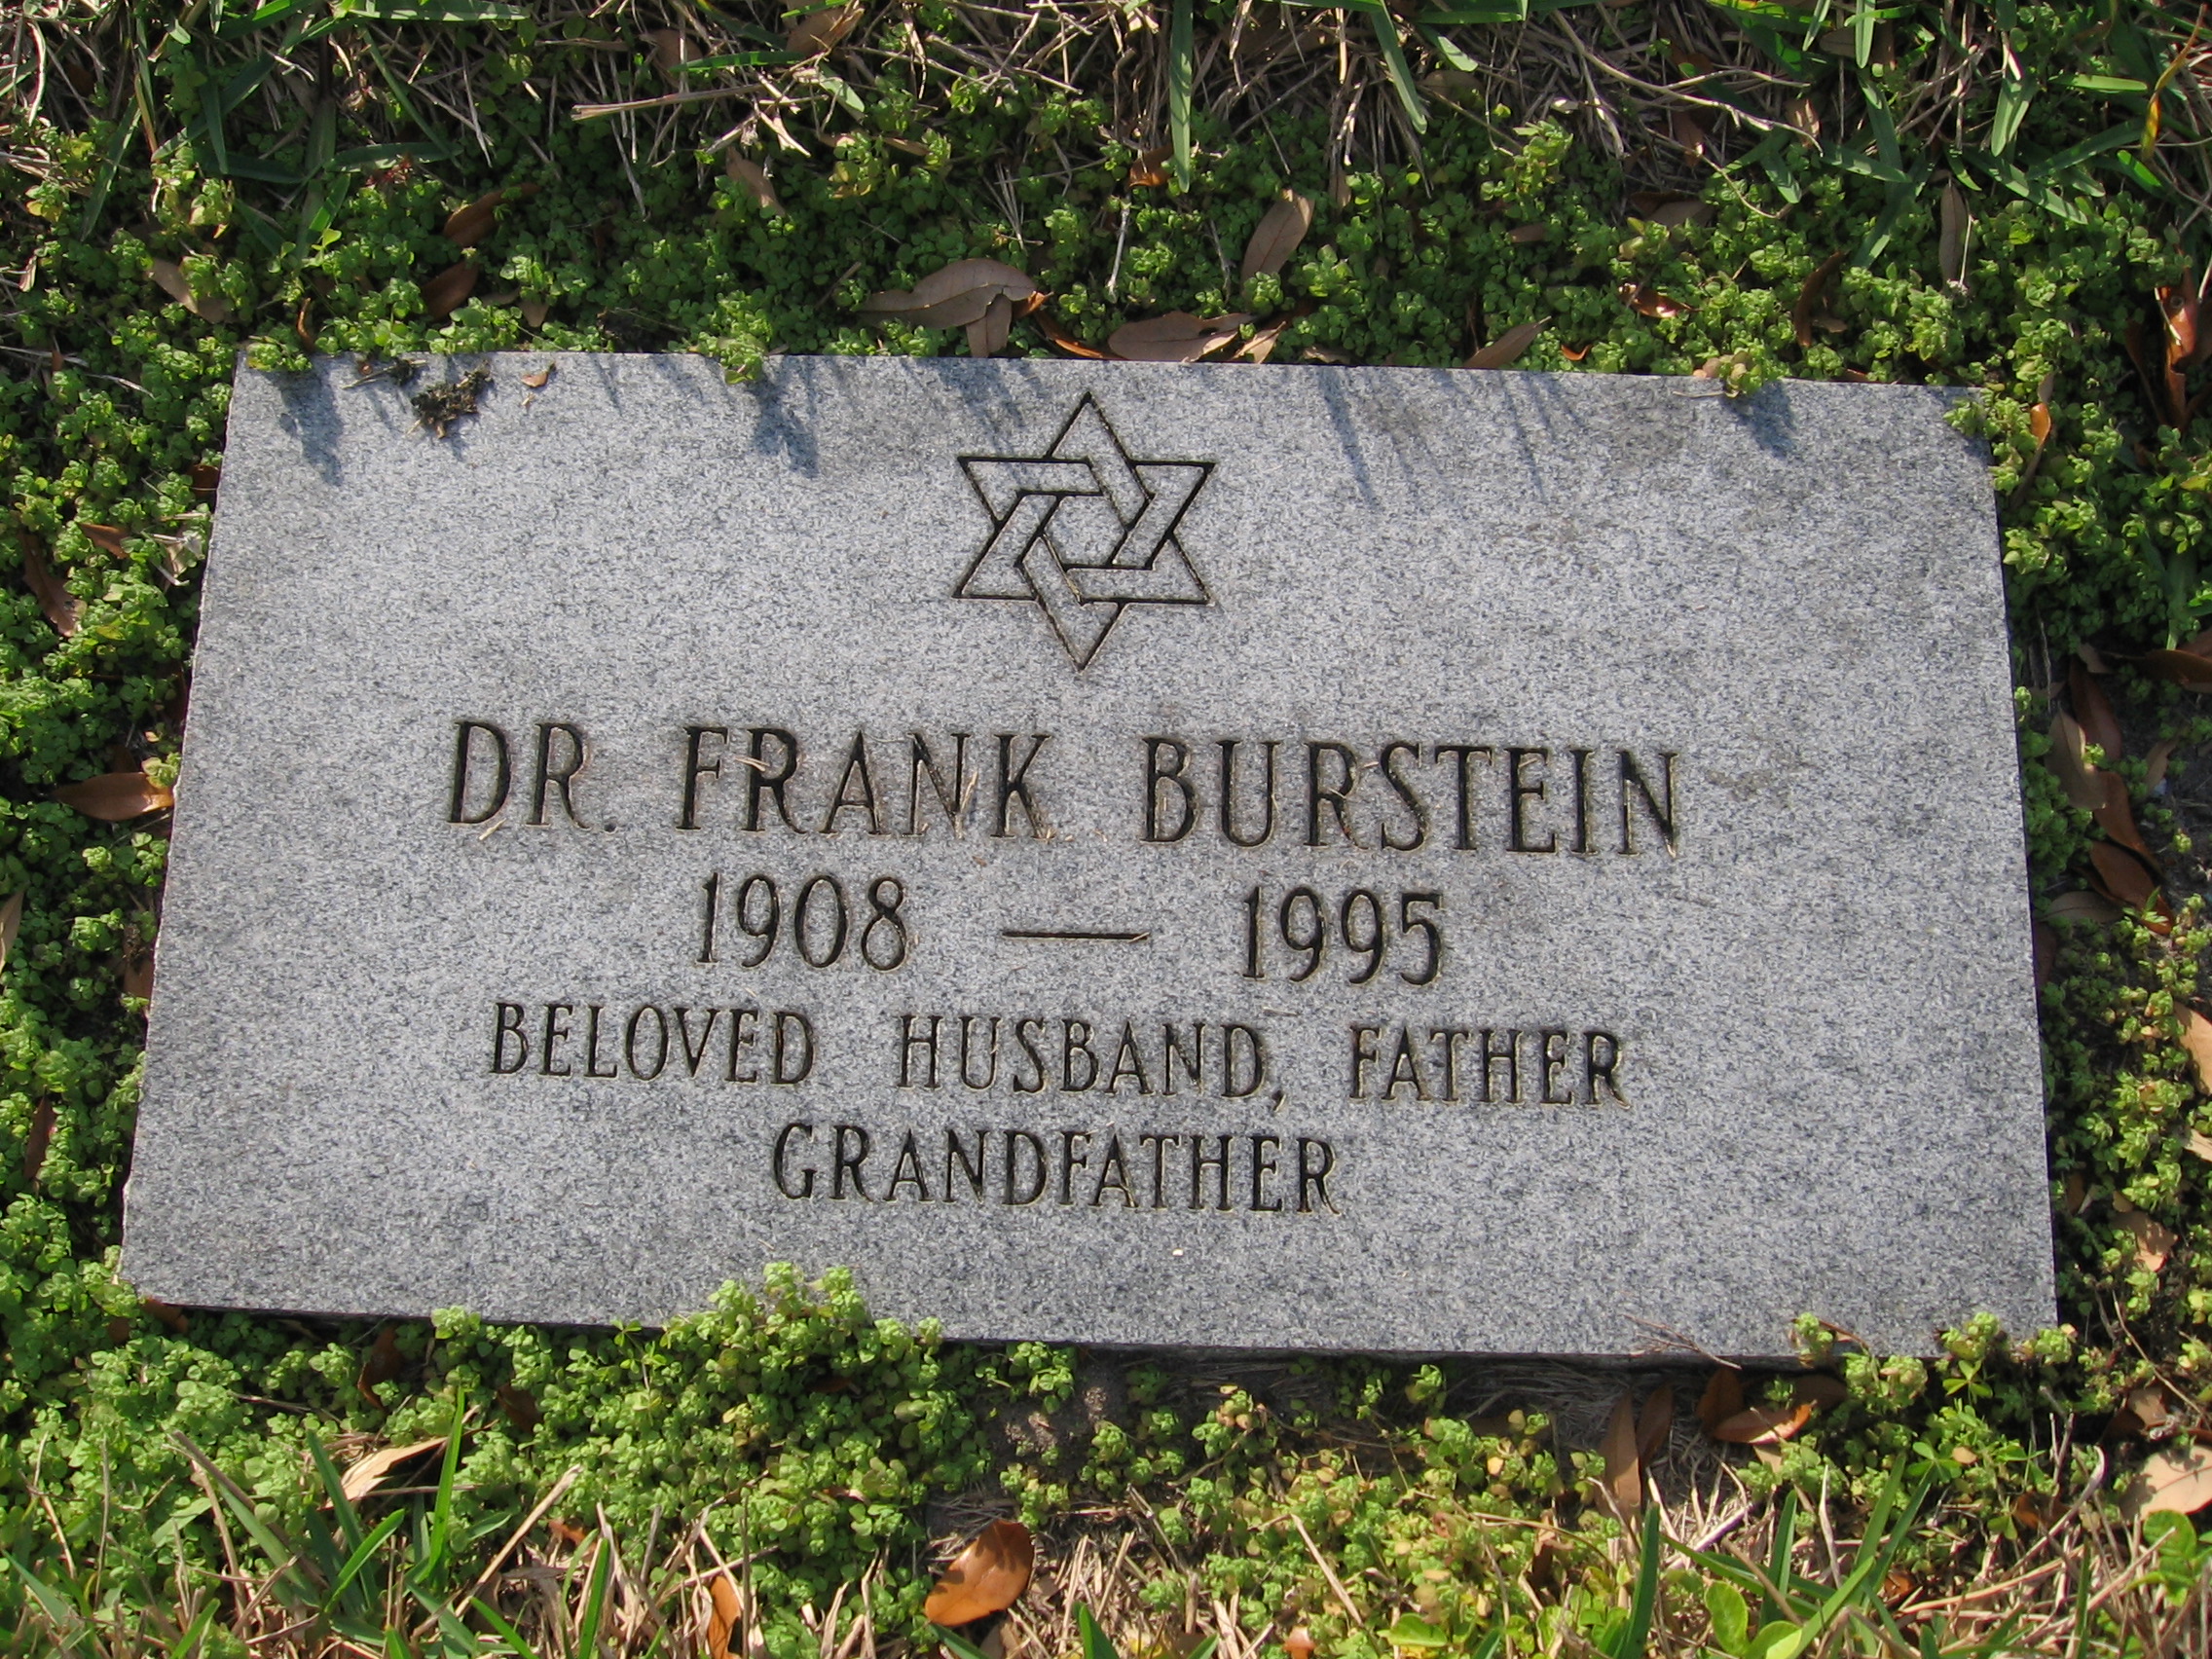 Dr Frank Burstein